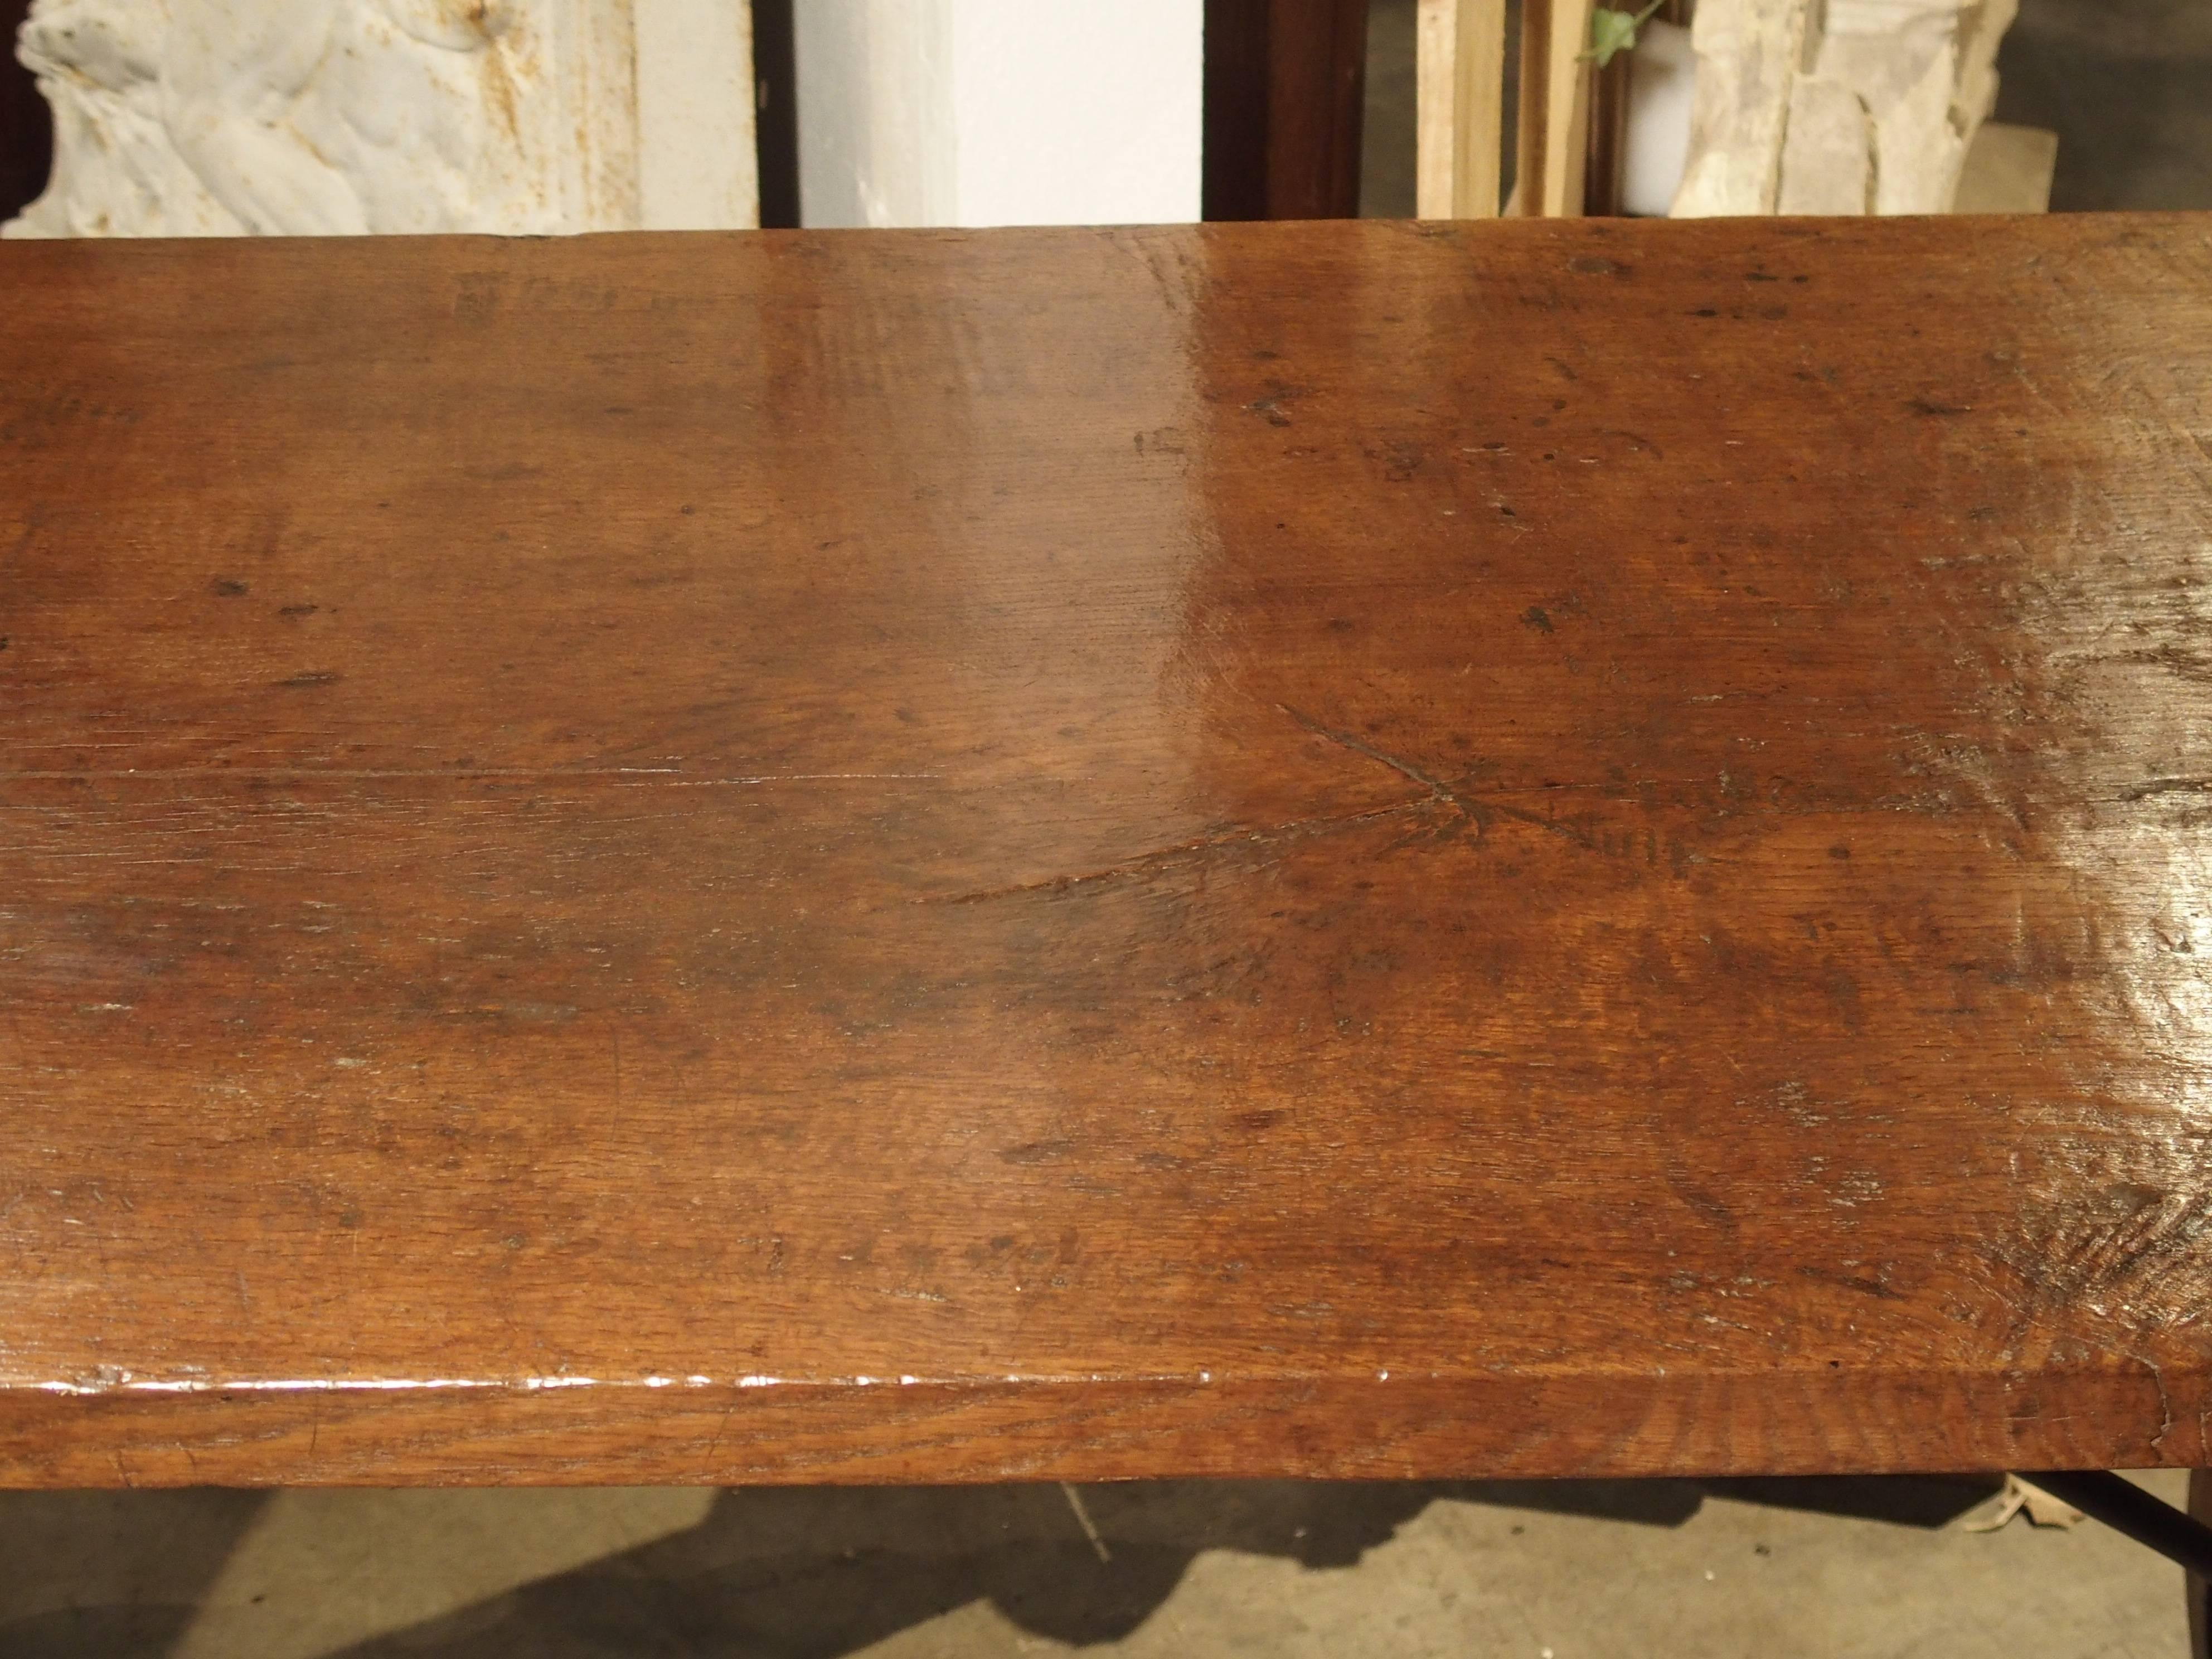 Dieser seltene Refektoriumstisch aus Nussbaumholz und Eiche aus dem 18. Jahrhundert in Spanien hat eine Platte aus einem einzigen Stück Holz. Der Überhang des Verdecks ermöglicht eine sehr bequeme Sitzgelegenheit an beiden Enden. Die Beine sind,